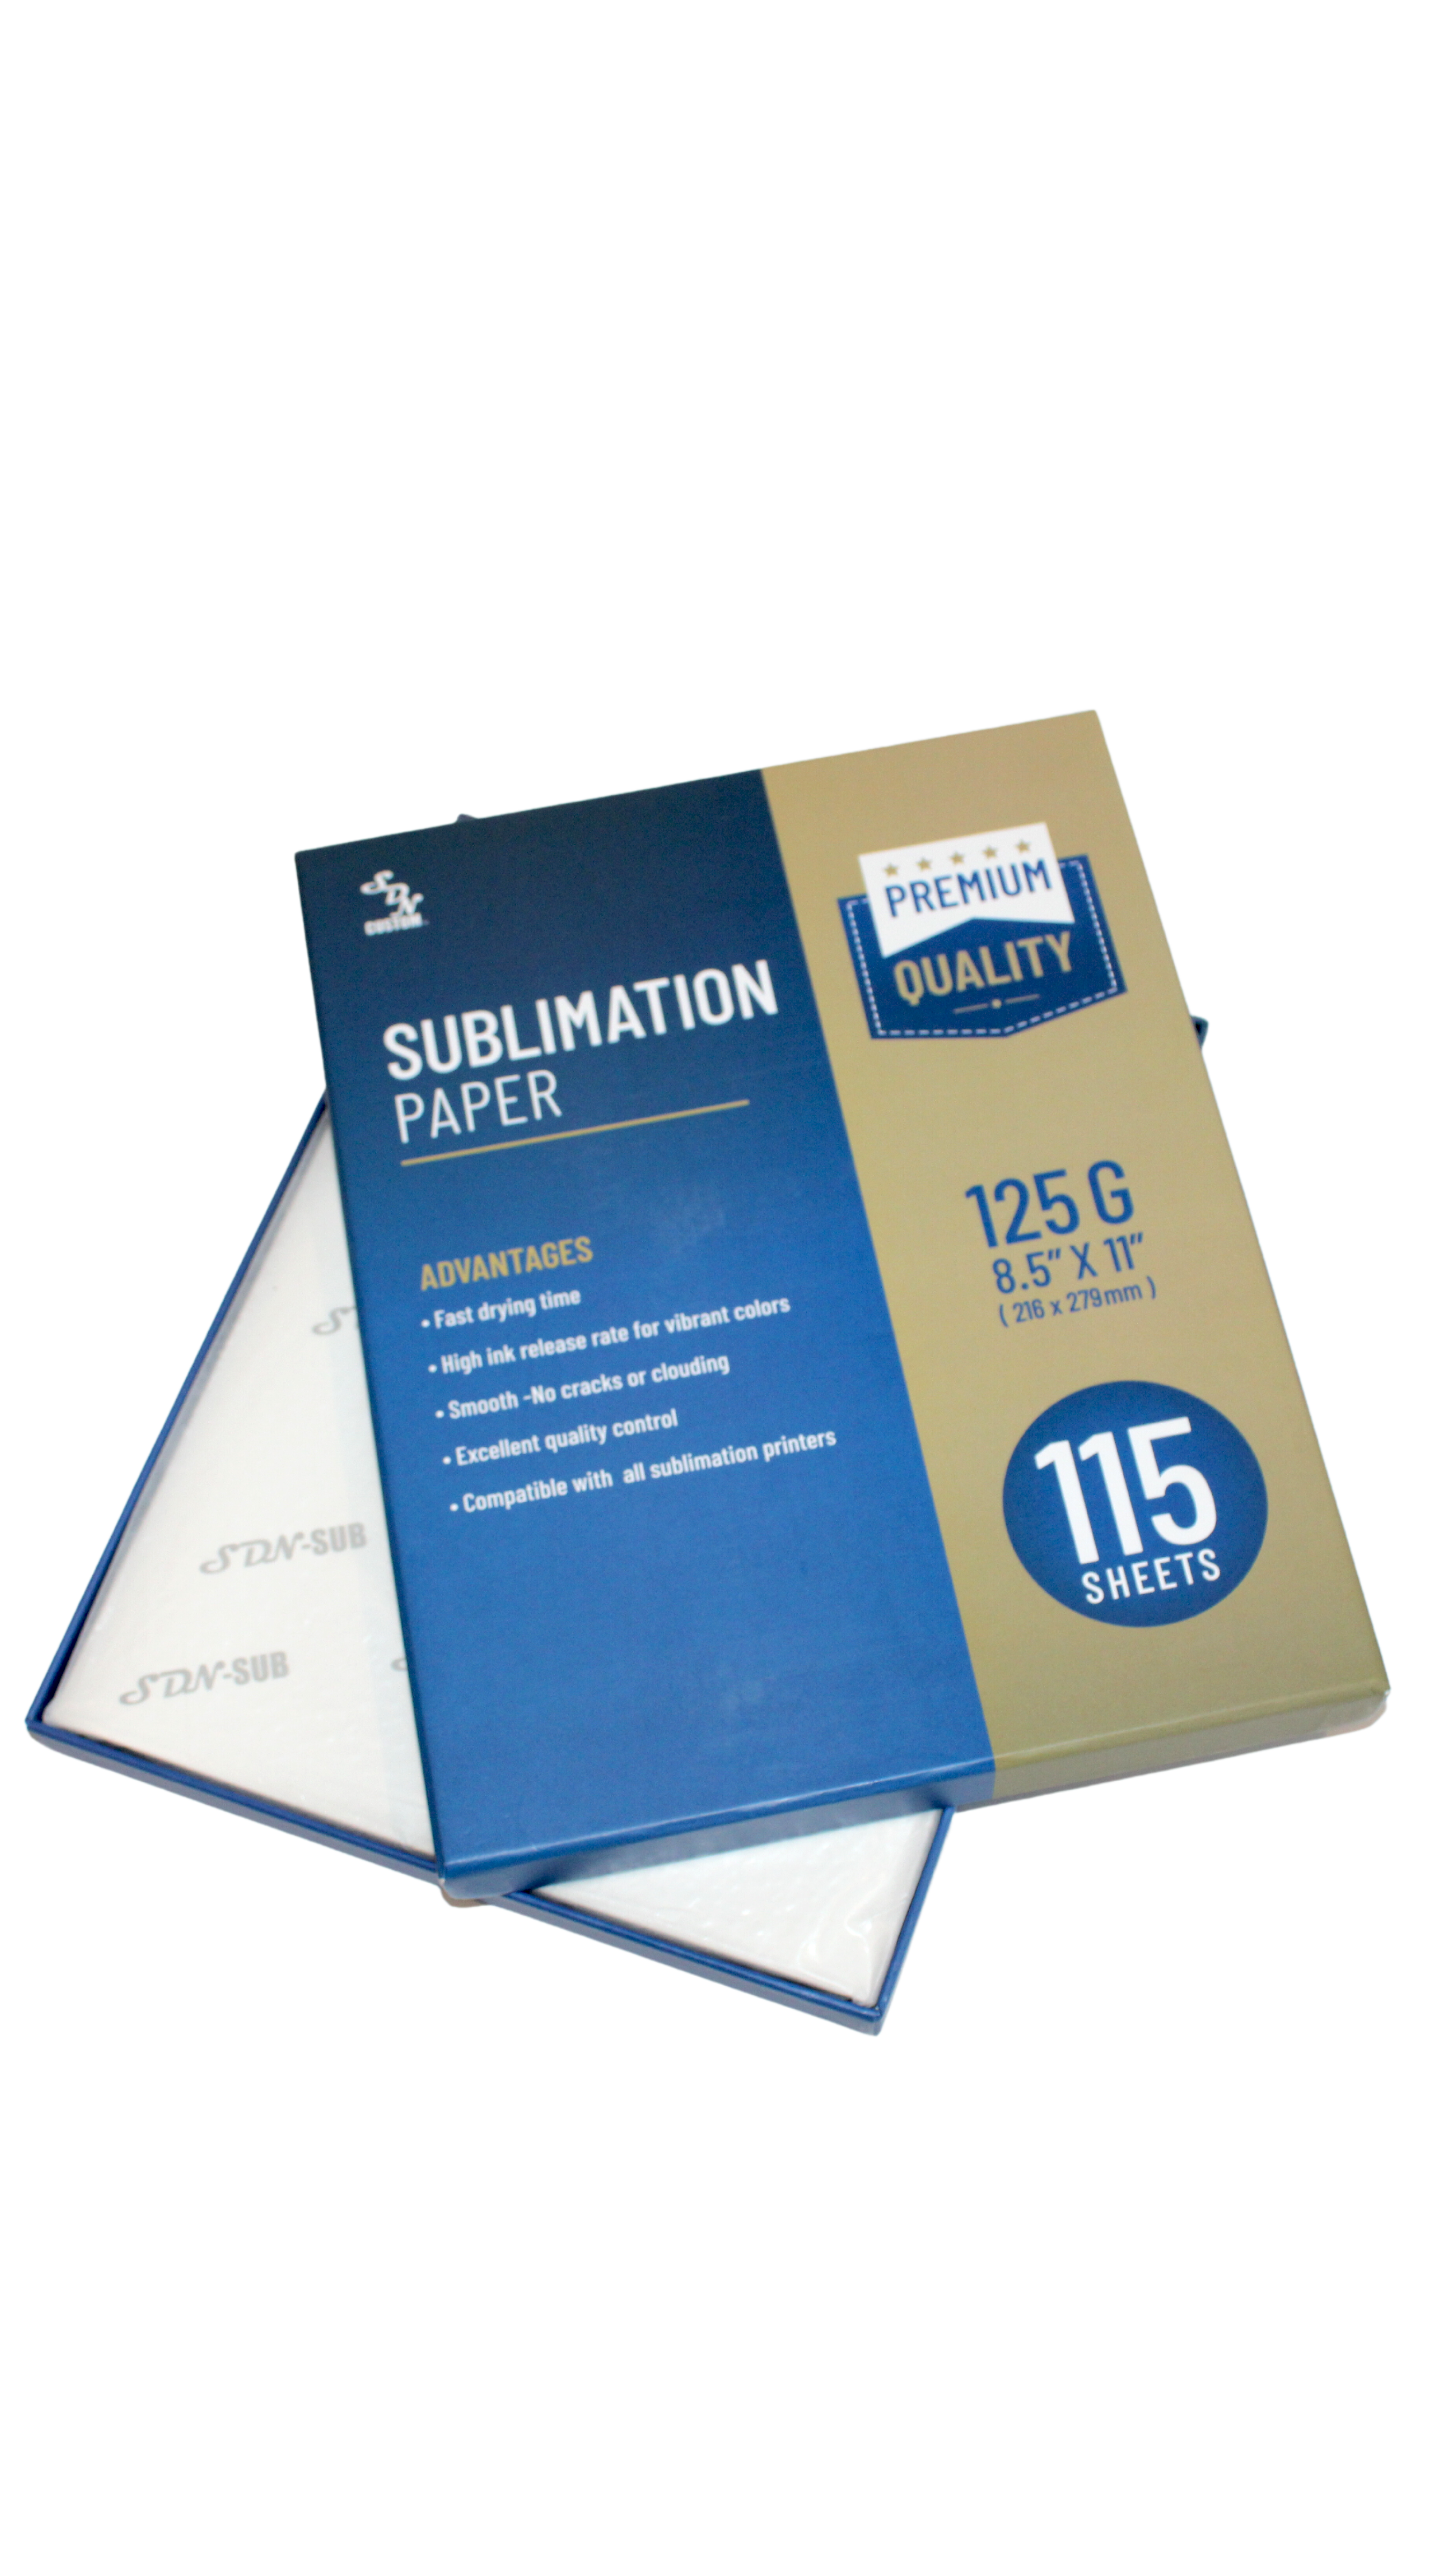 SDN Sublimation Inc Papier de sublimation 125g 115 feuilles